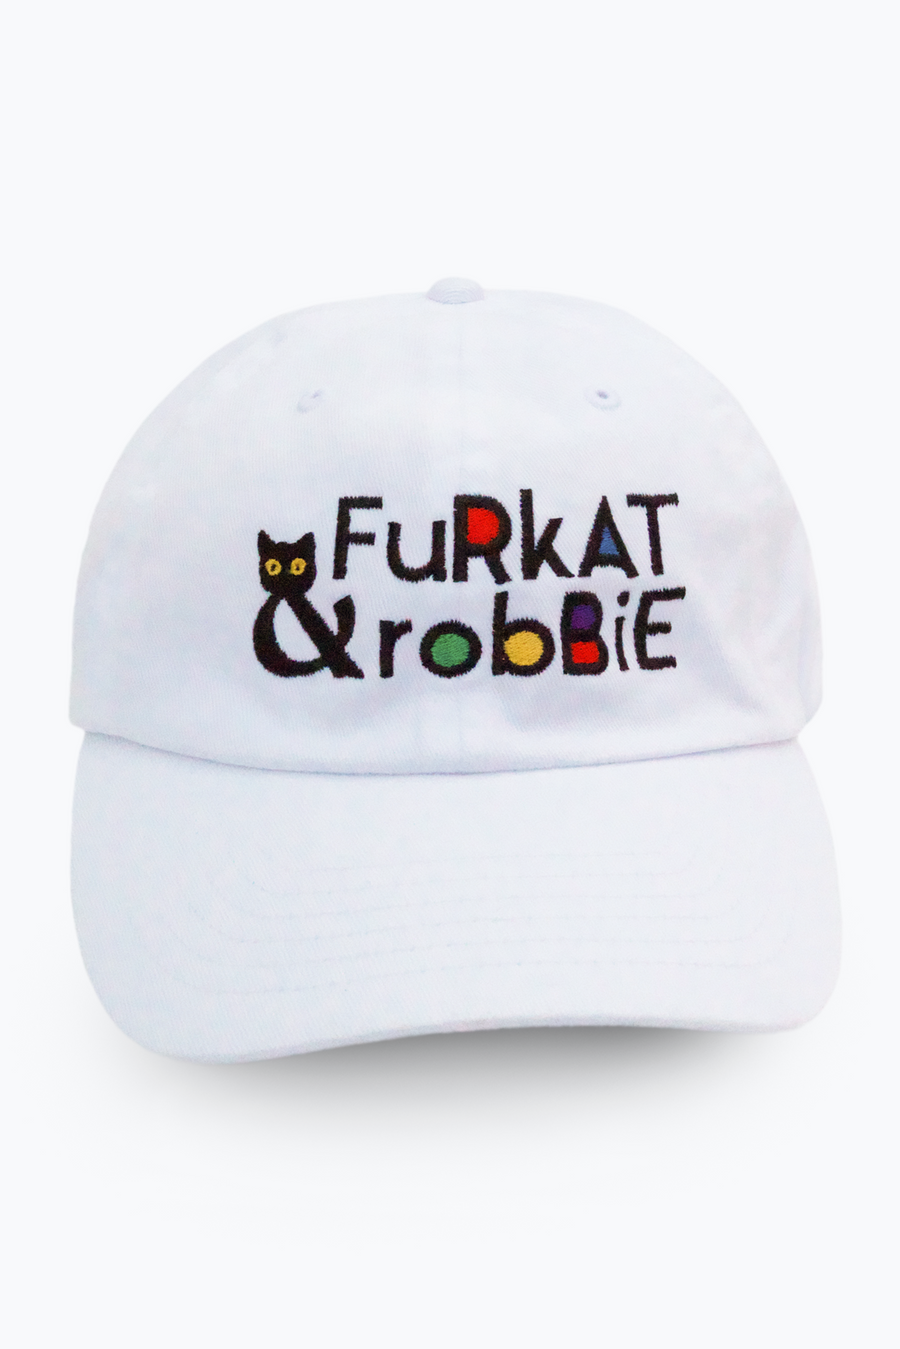 F&R Logo Cap - Furkat & Robbie